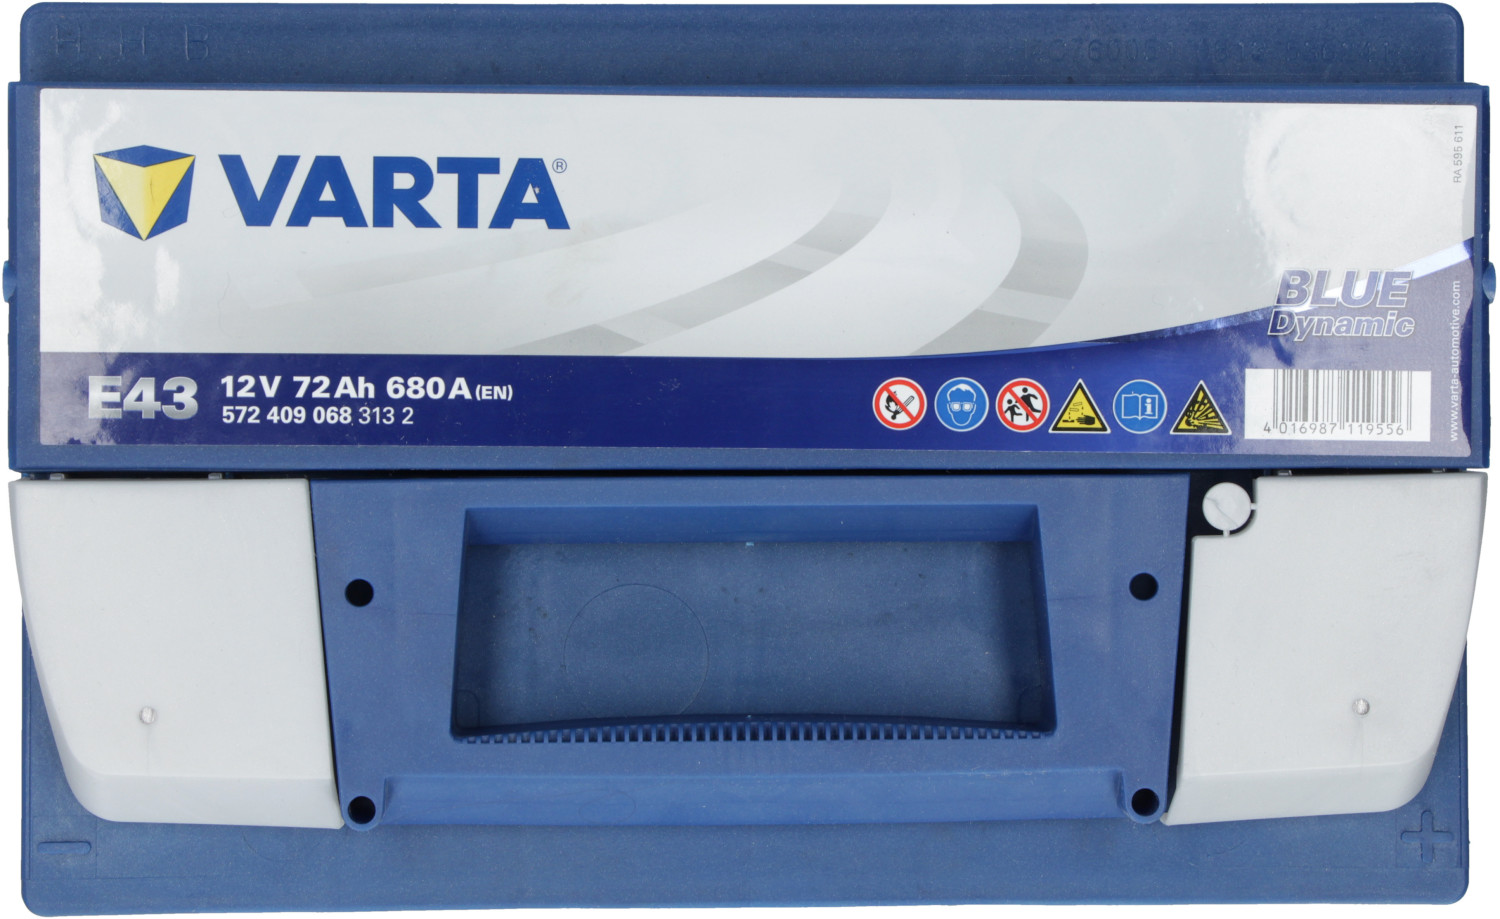 Varta E43 - 572 409 068 – Blue dynamic 12 Volt - 72 Ah - 680 A